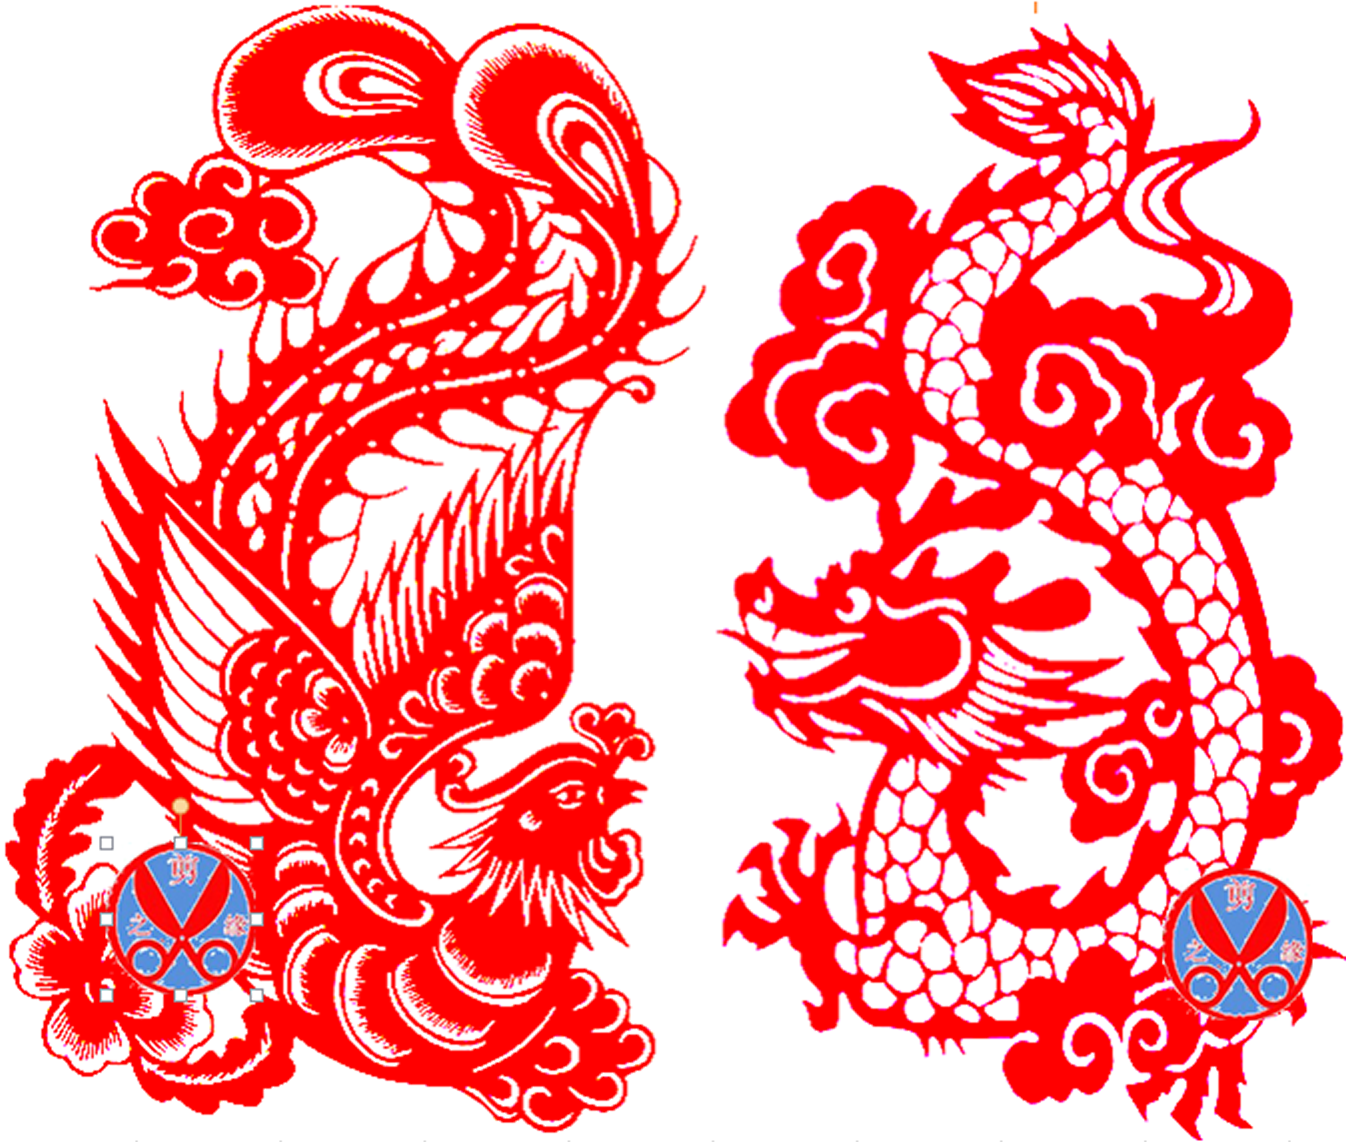 龙凤 大号剪纸纯手工结婚装饰品窗花中国传统文化礼品 龙 凤 凤凰